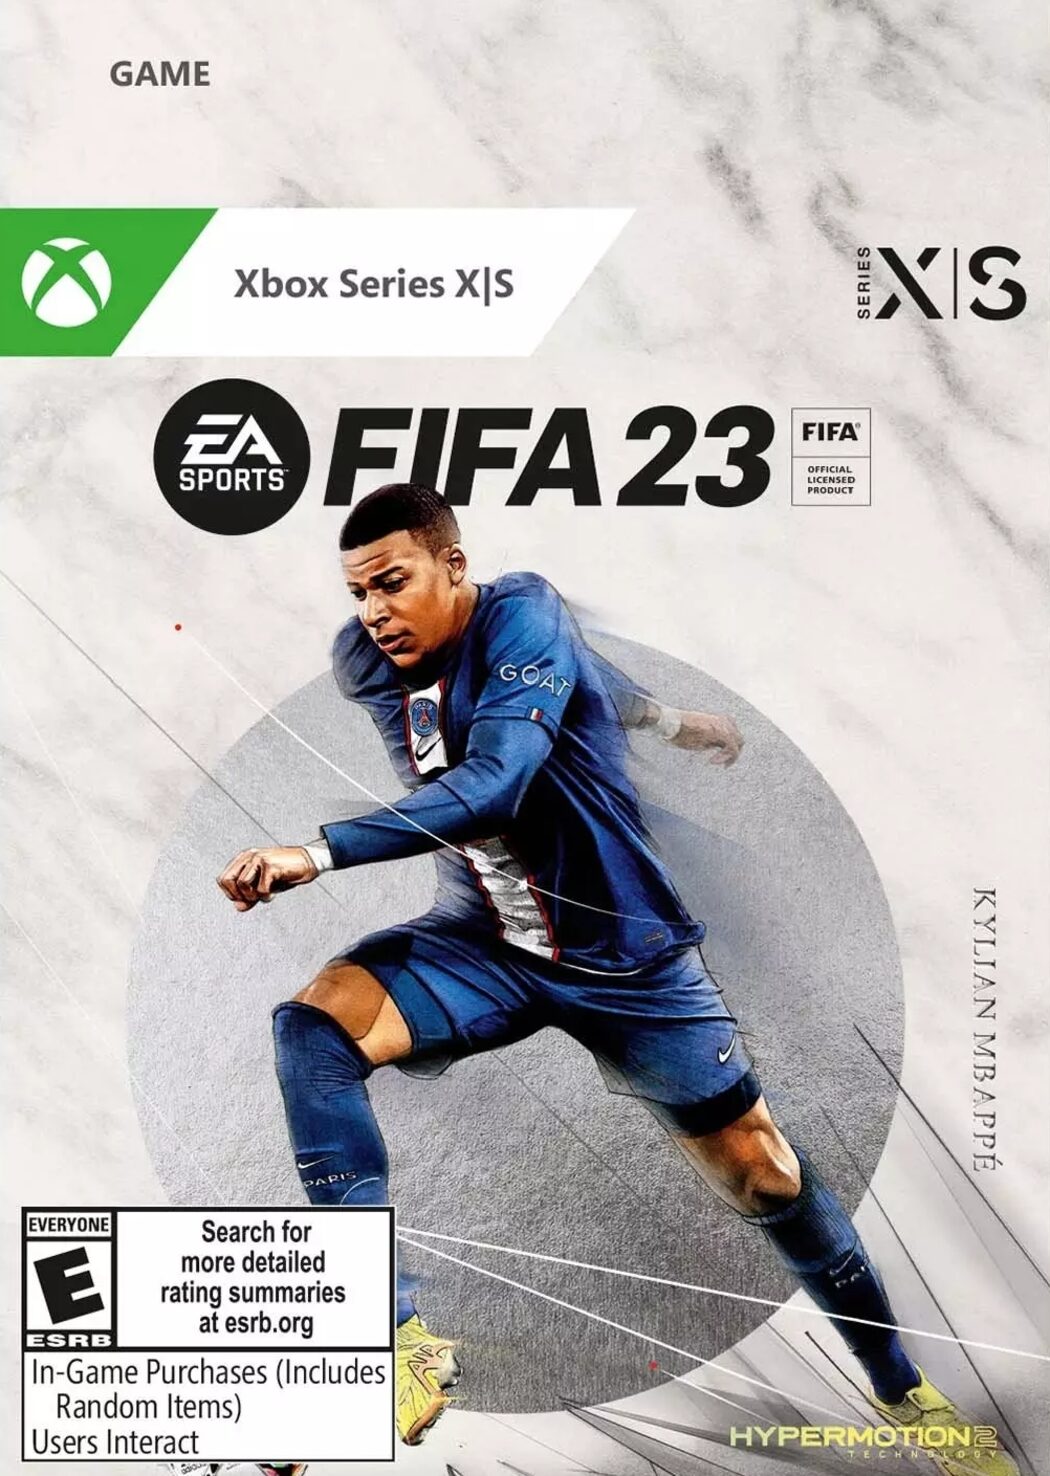 Trilha sonora do FIFA 23 - Oficial da Electronic Arts